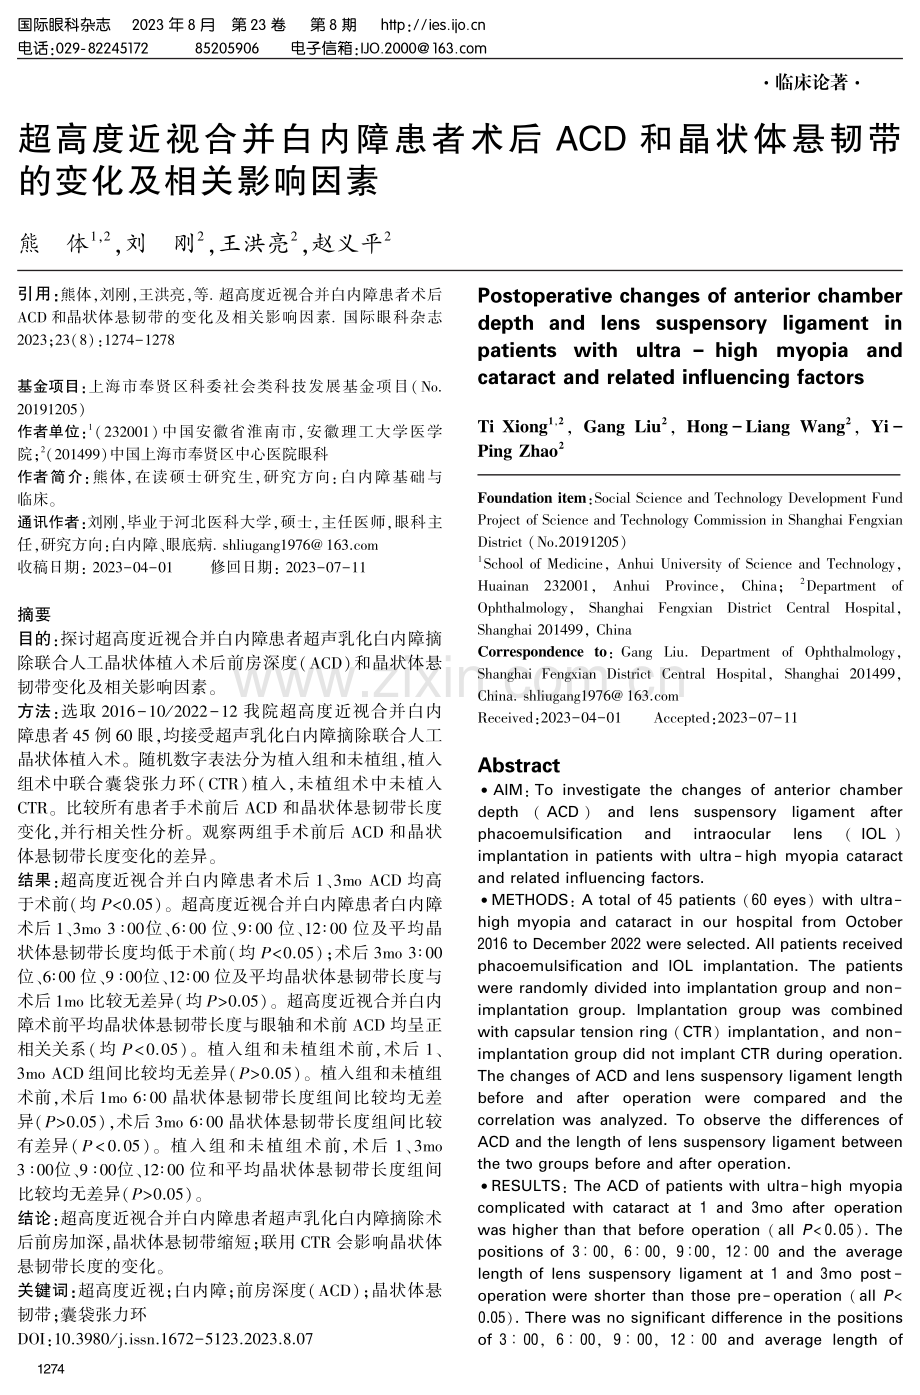 超高度近视合并白内障患者术后ACD和晶状体悬韧带的变化及相关影响因素.pdf_第1页